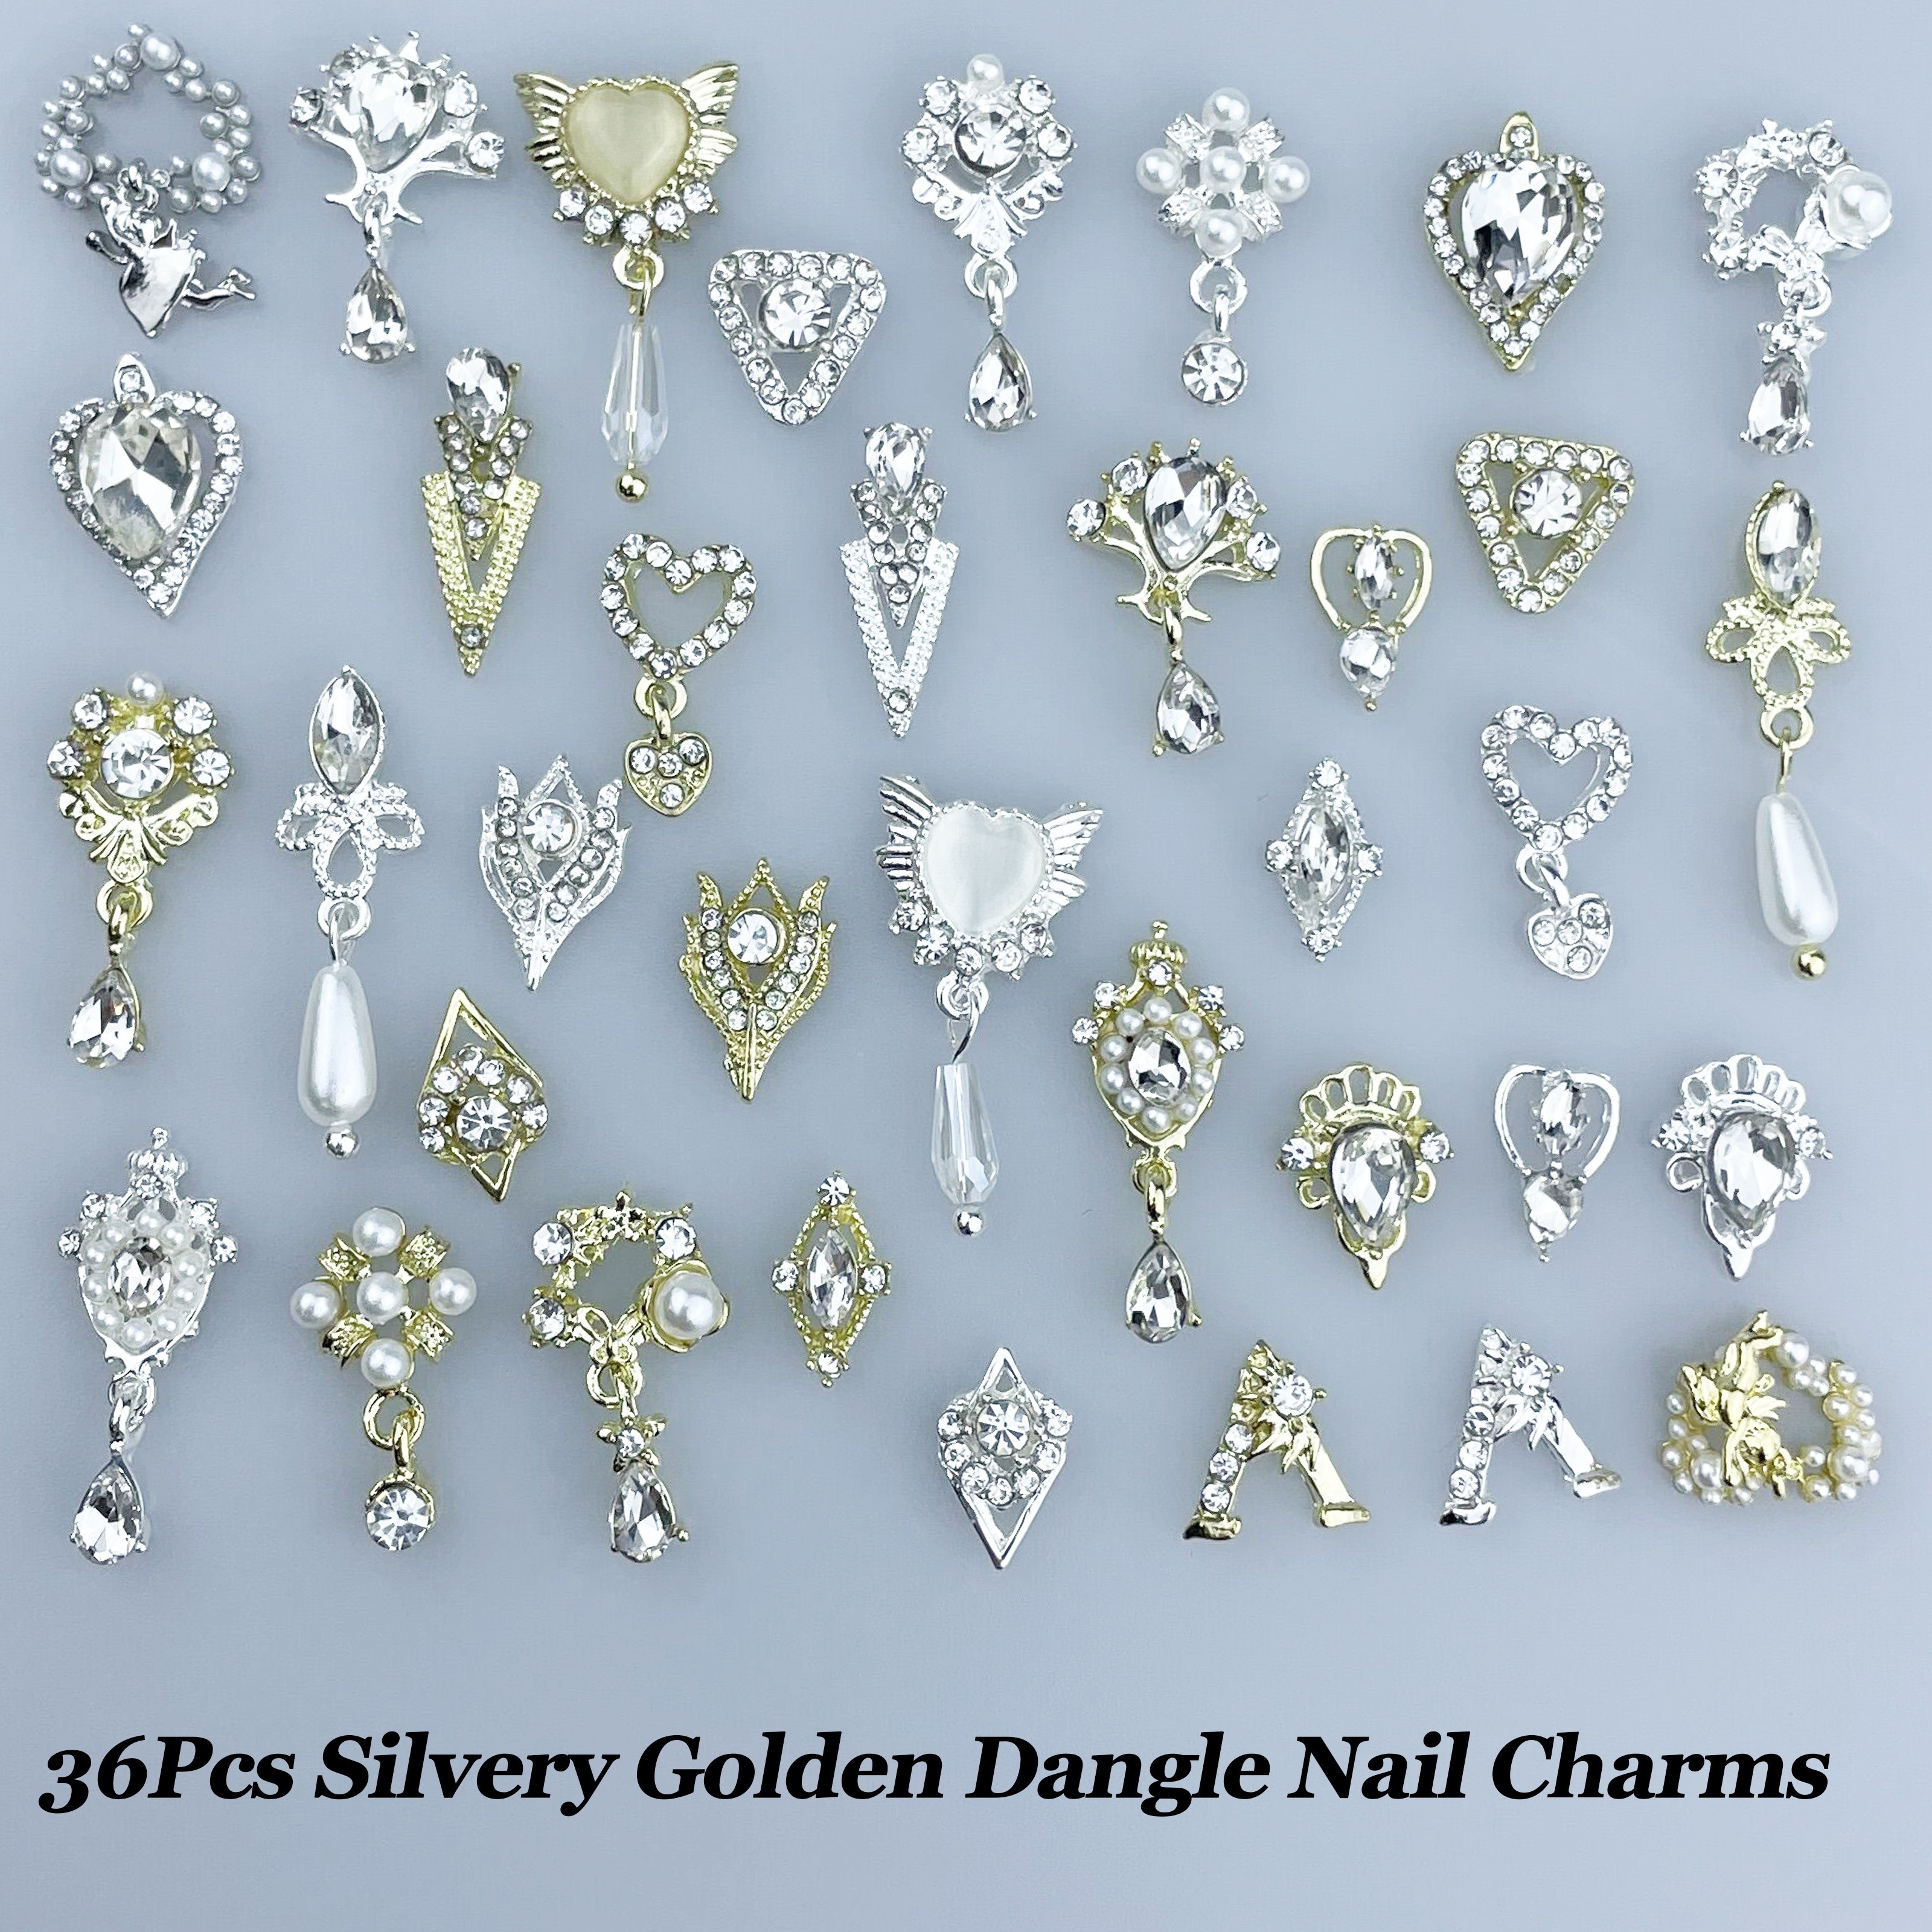 40PCS Gold Nail Charm Nail Charms Dangle Nail Charms Silver Nail